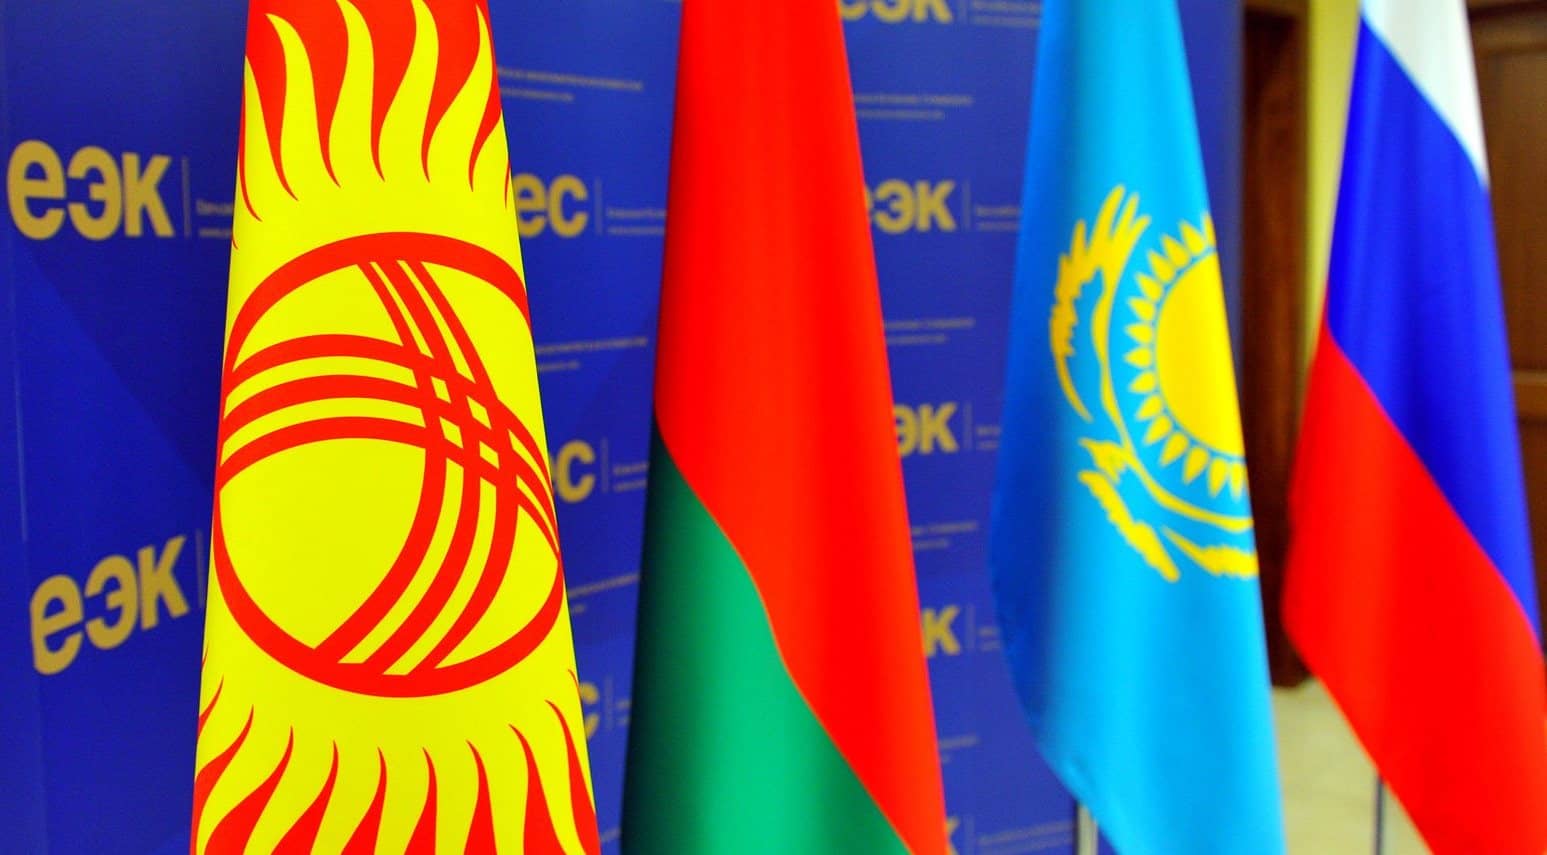 ЕЭК и доноры рассмотрят предложение Кыргызстана о финансировании догоняющих экономик союза